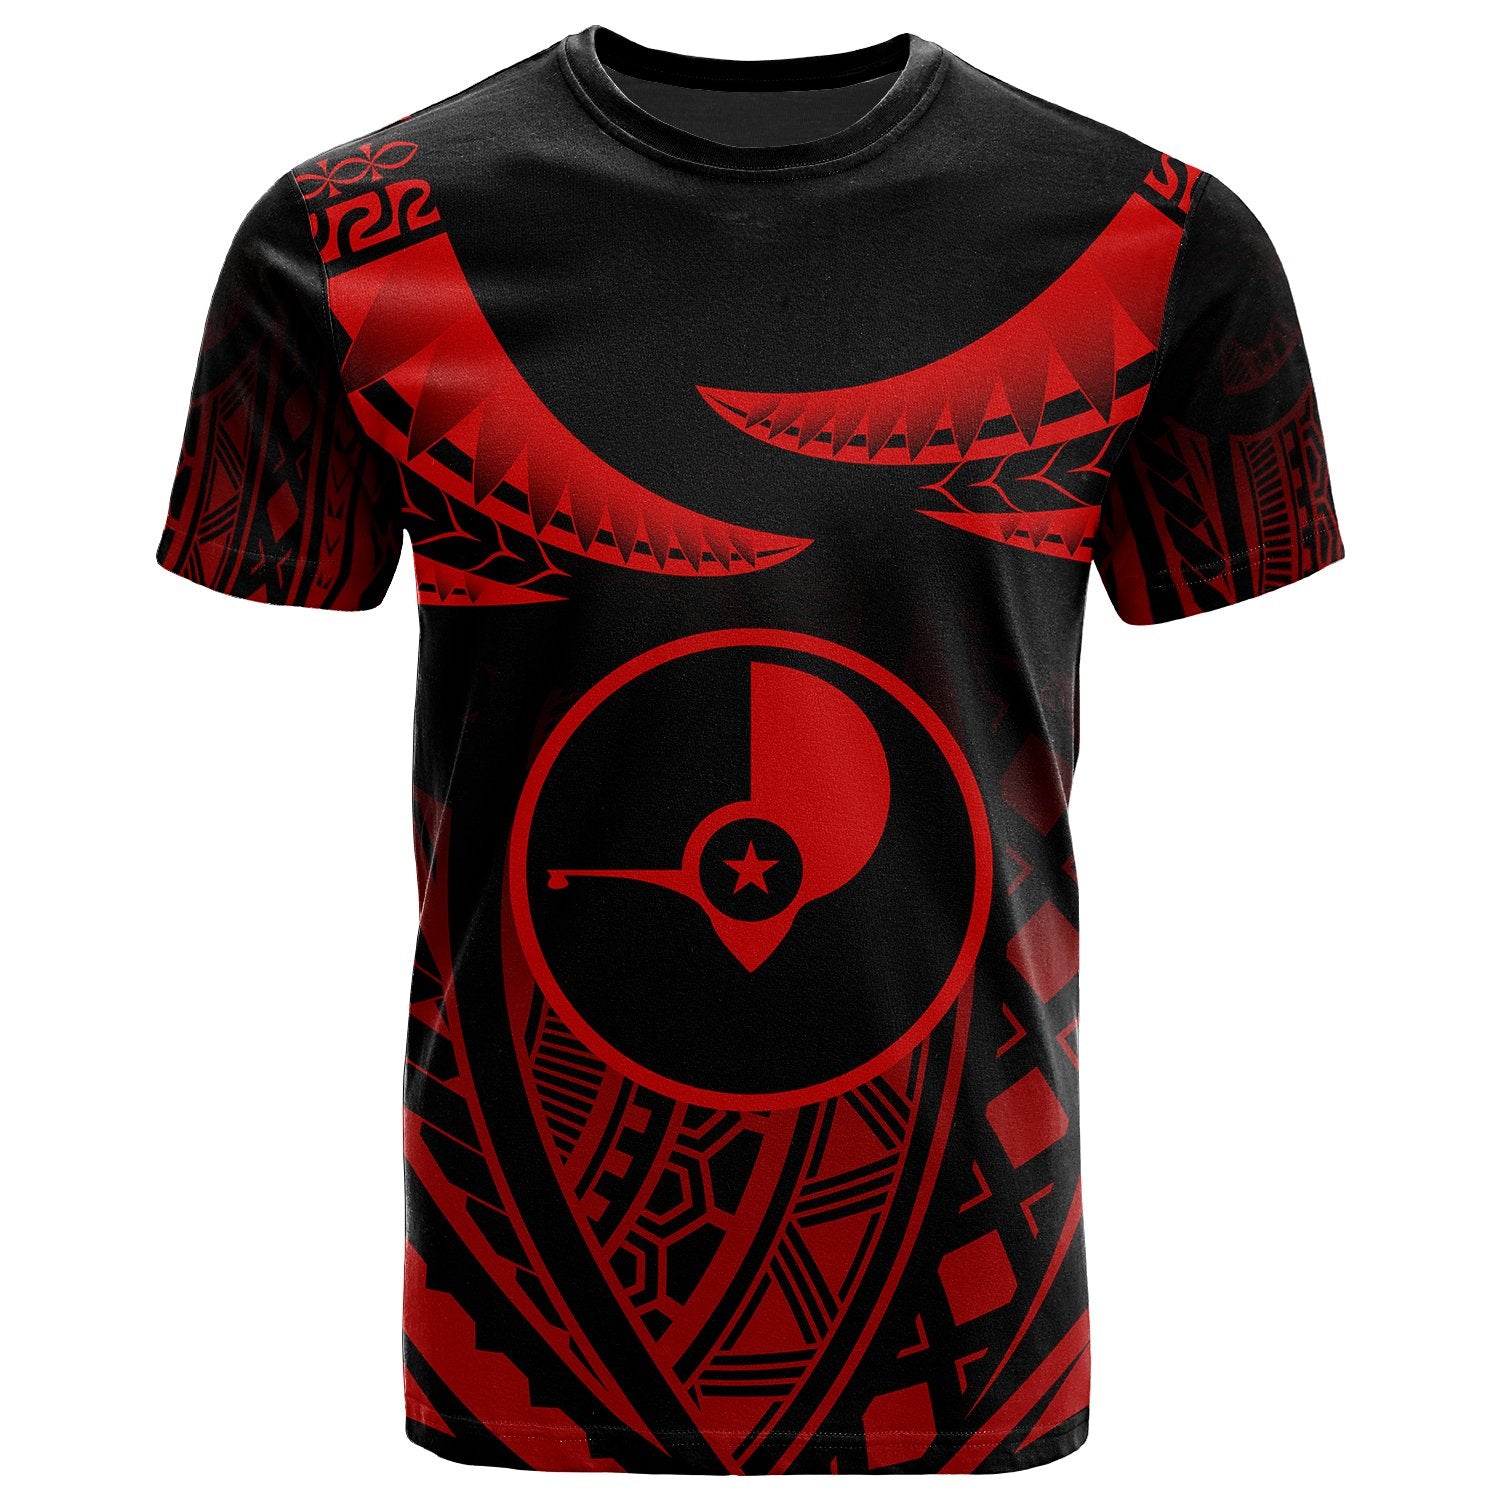 Yap T Shirt Polynesian Tribal Tattoo Unisex Red - Polynesian Pride